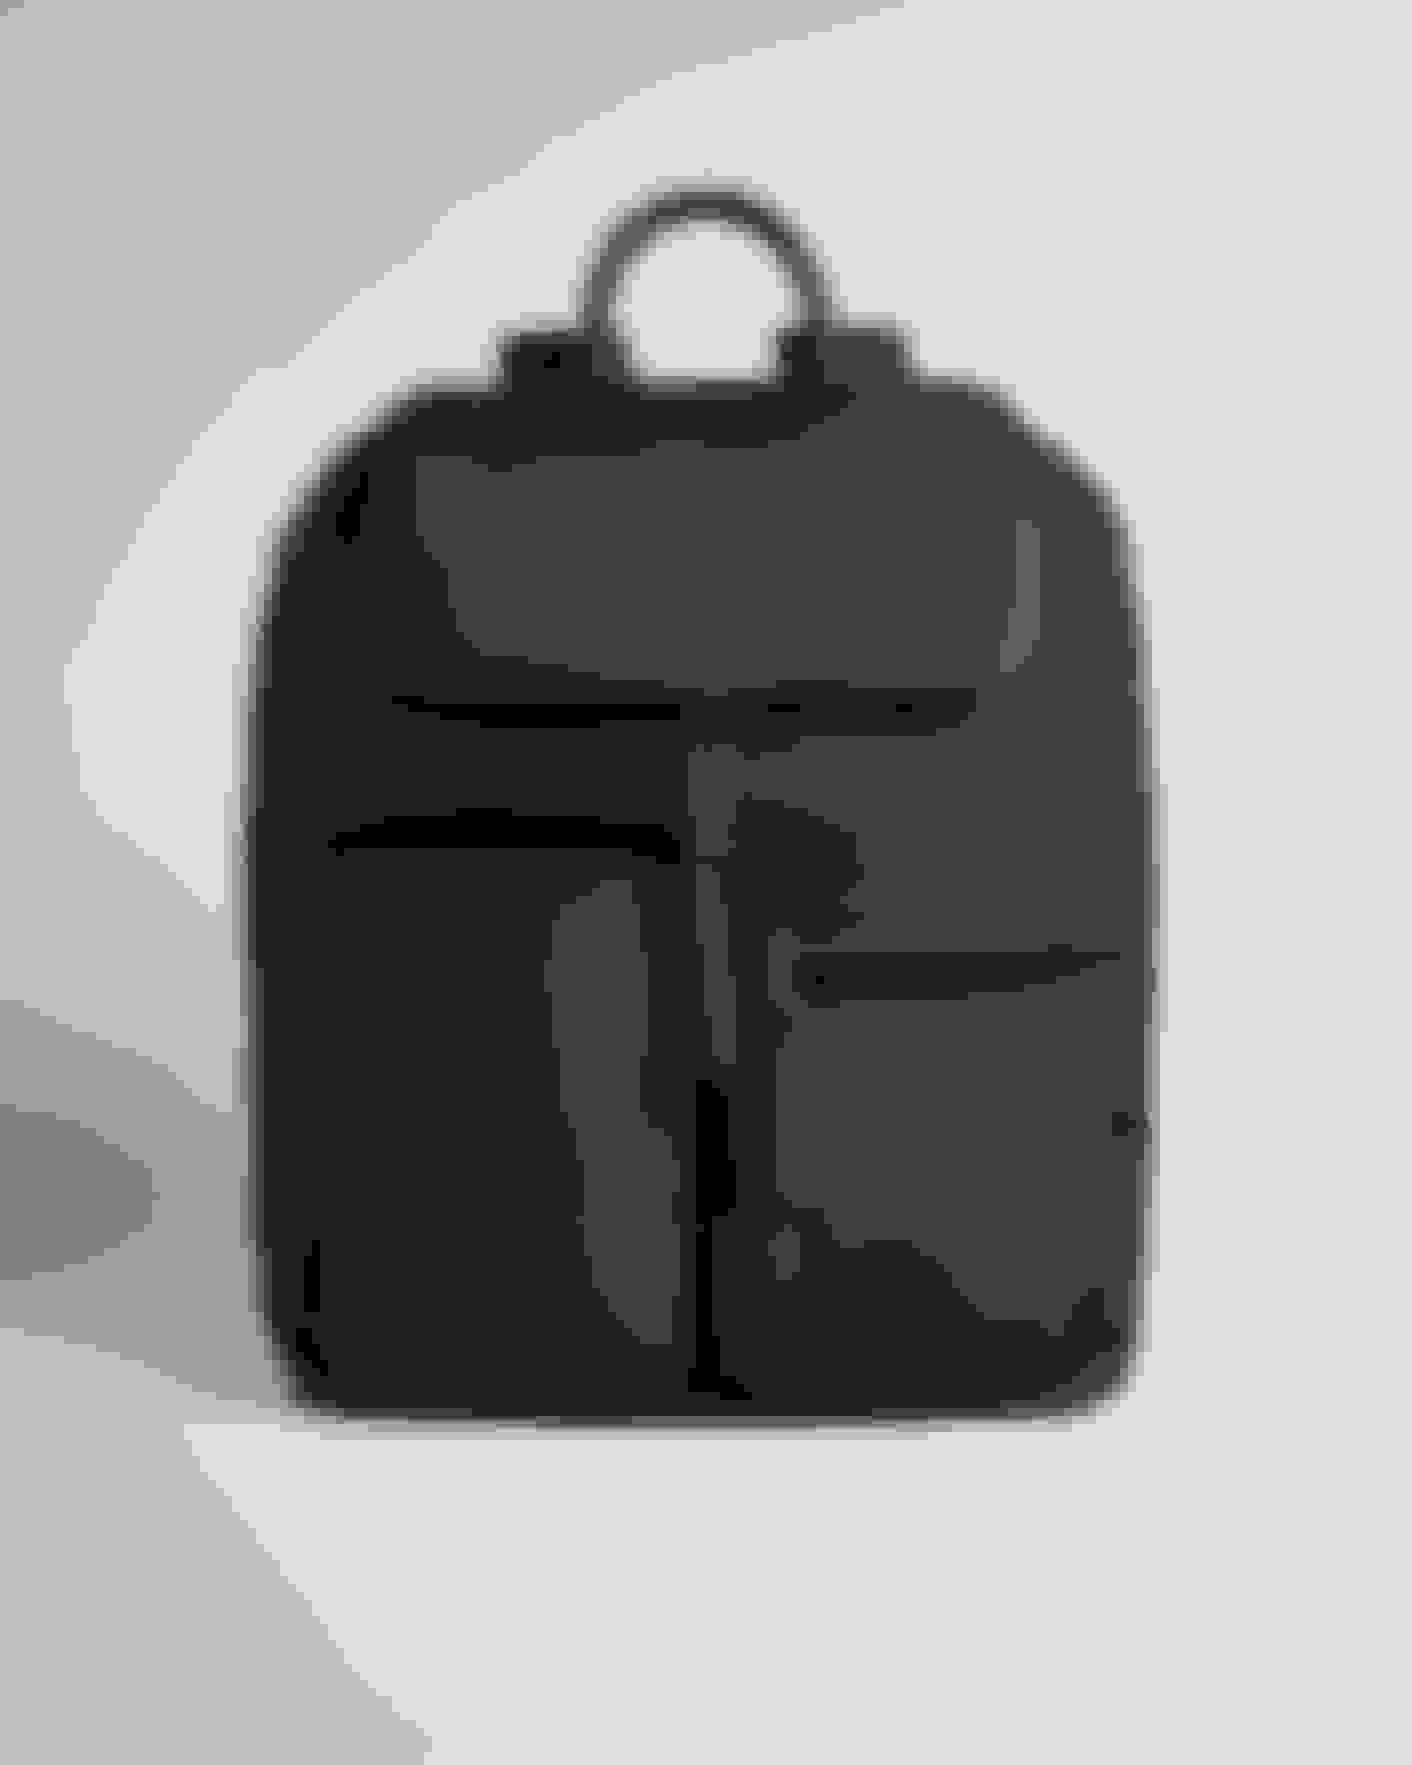 Black Modular Backpack Ted Baker